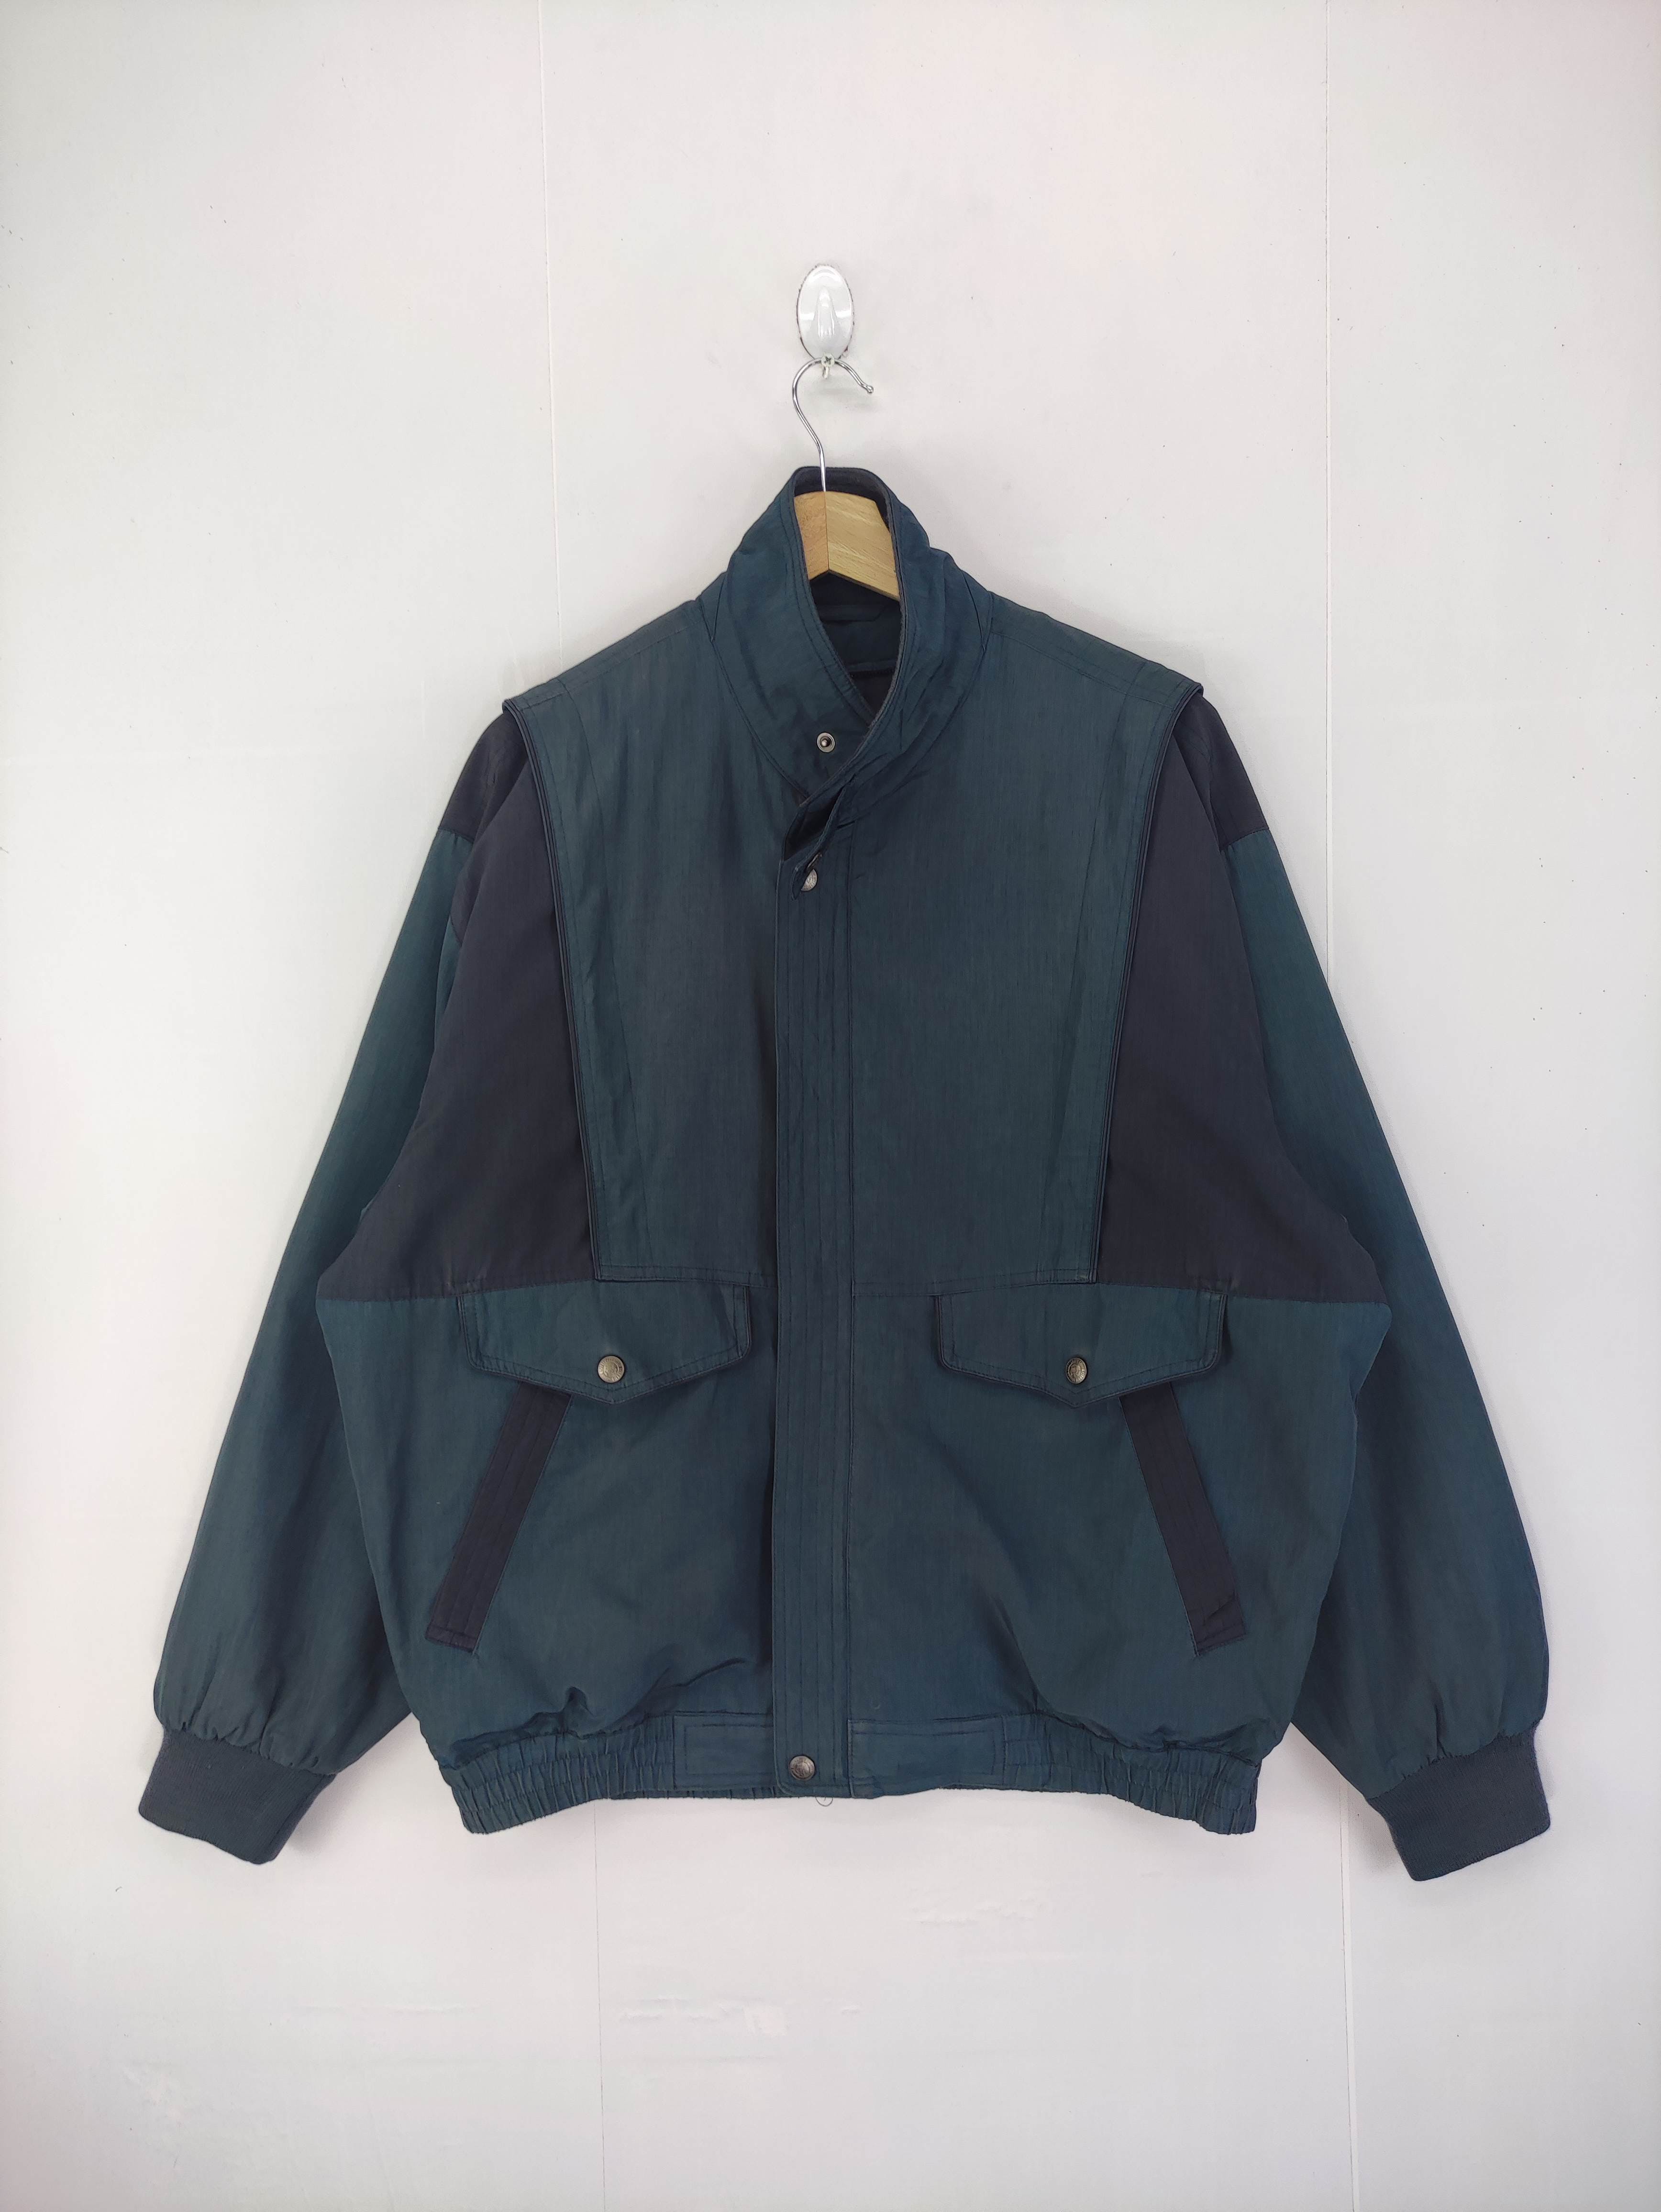 Vintage Unbrand Jacket Zipper - 1